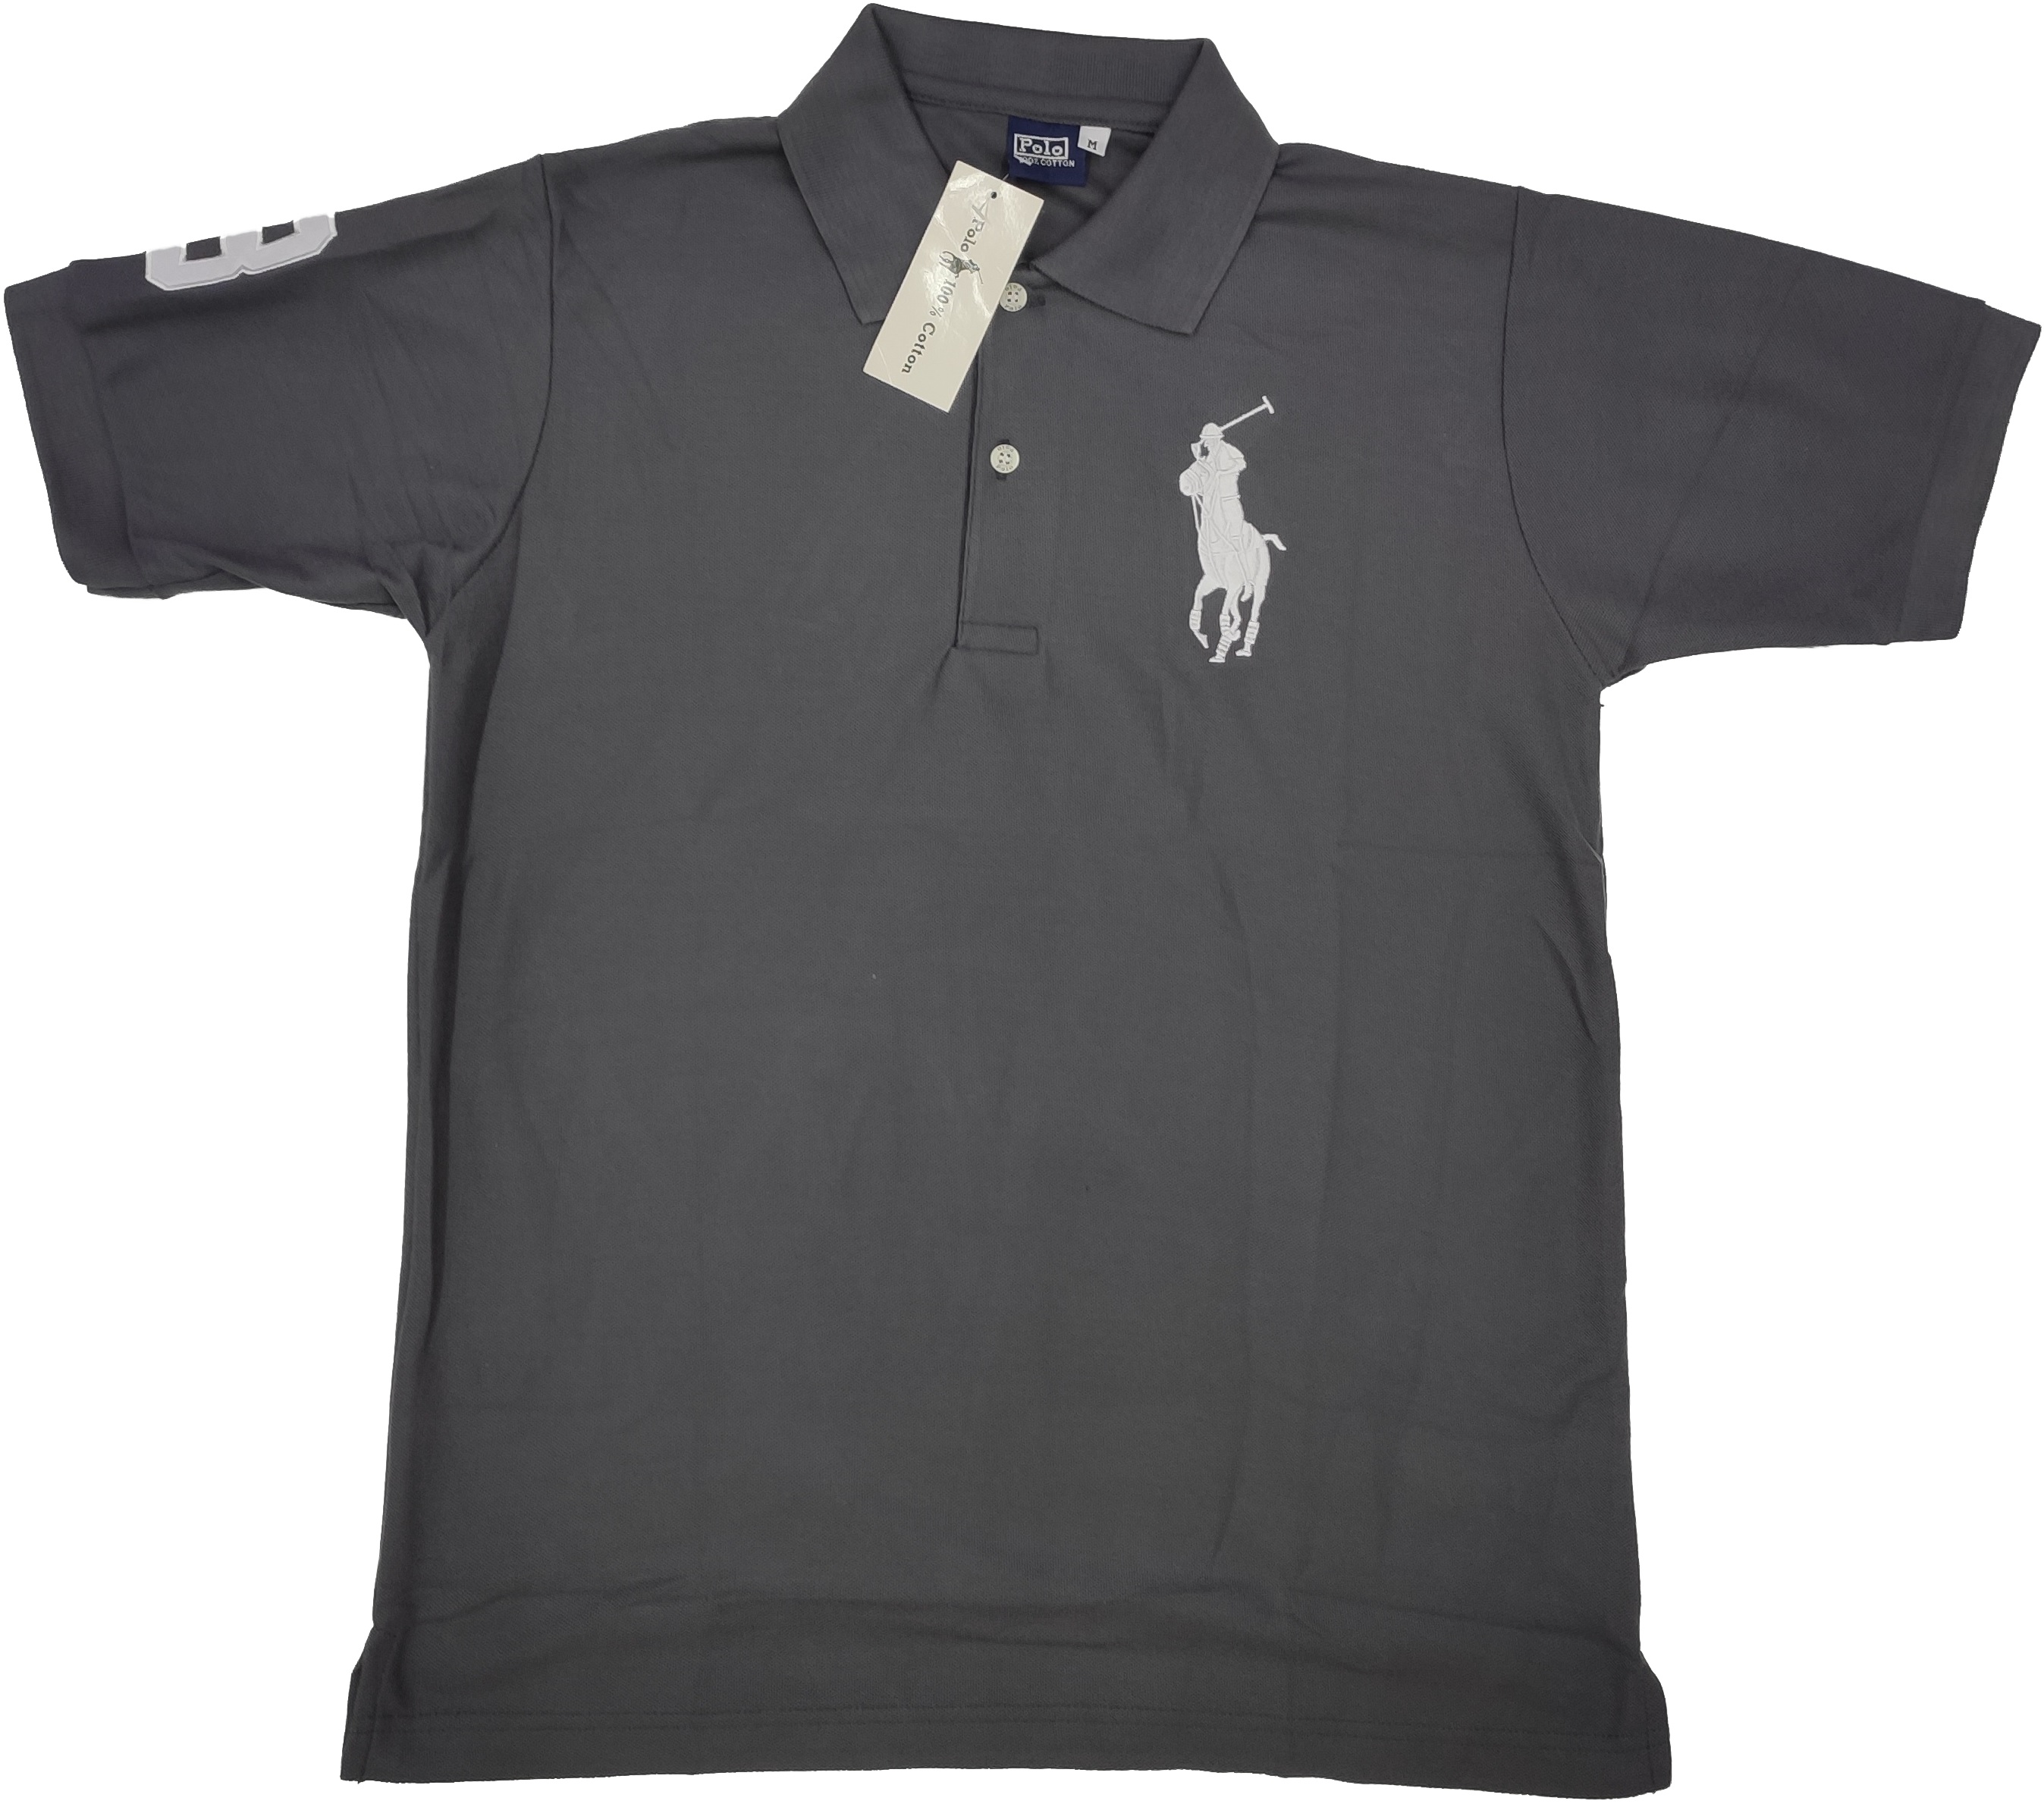 ⭐ Polo 100 ⭐ เสื้อยืด ม้าใหญ่ ผ้าจูติ คอปก แขนสั้น แฟชั่น สีพื้น ปักลาย โปโล ม้า Polo สปอร์ต unisex